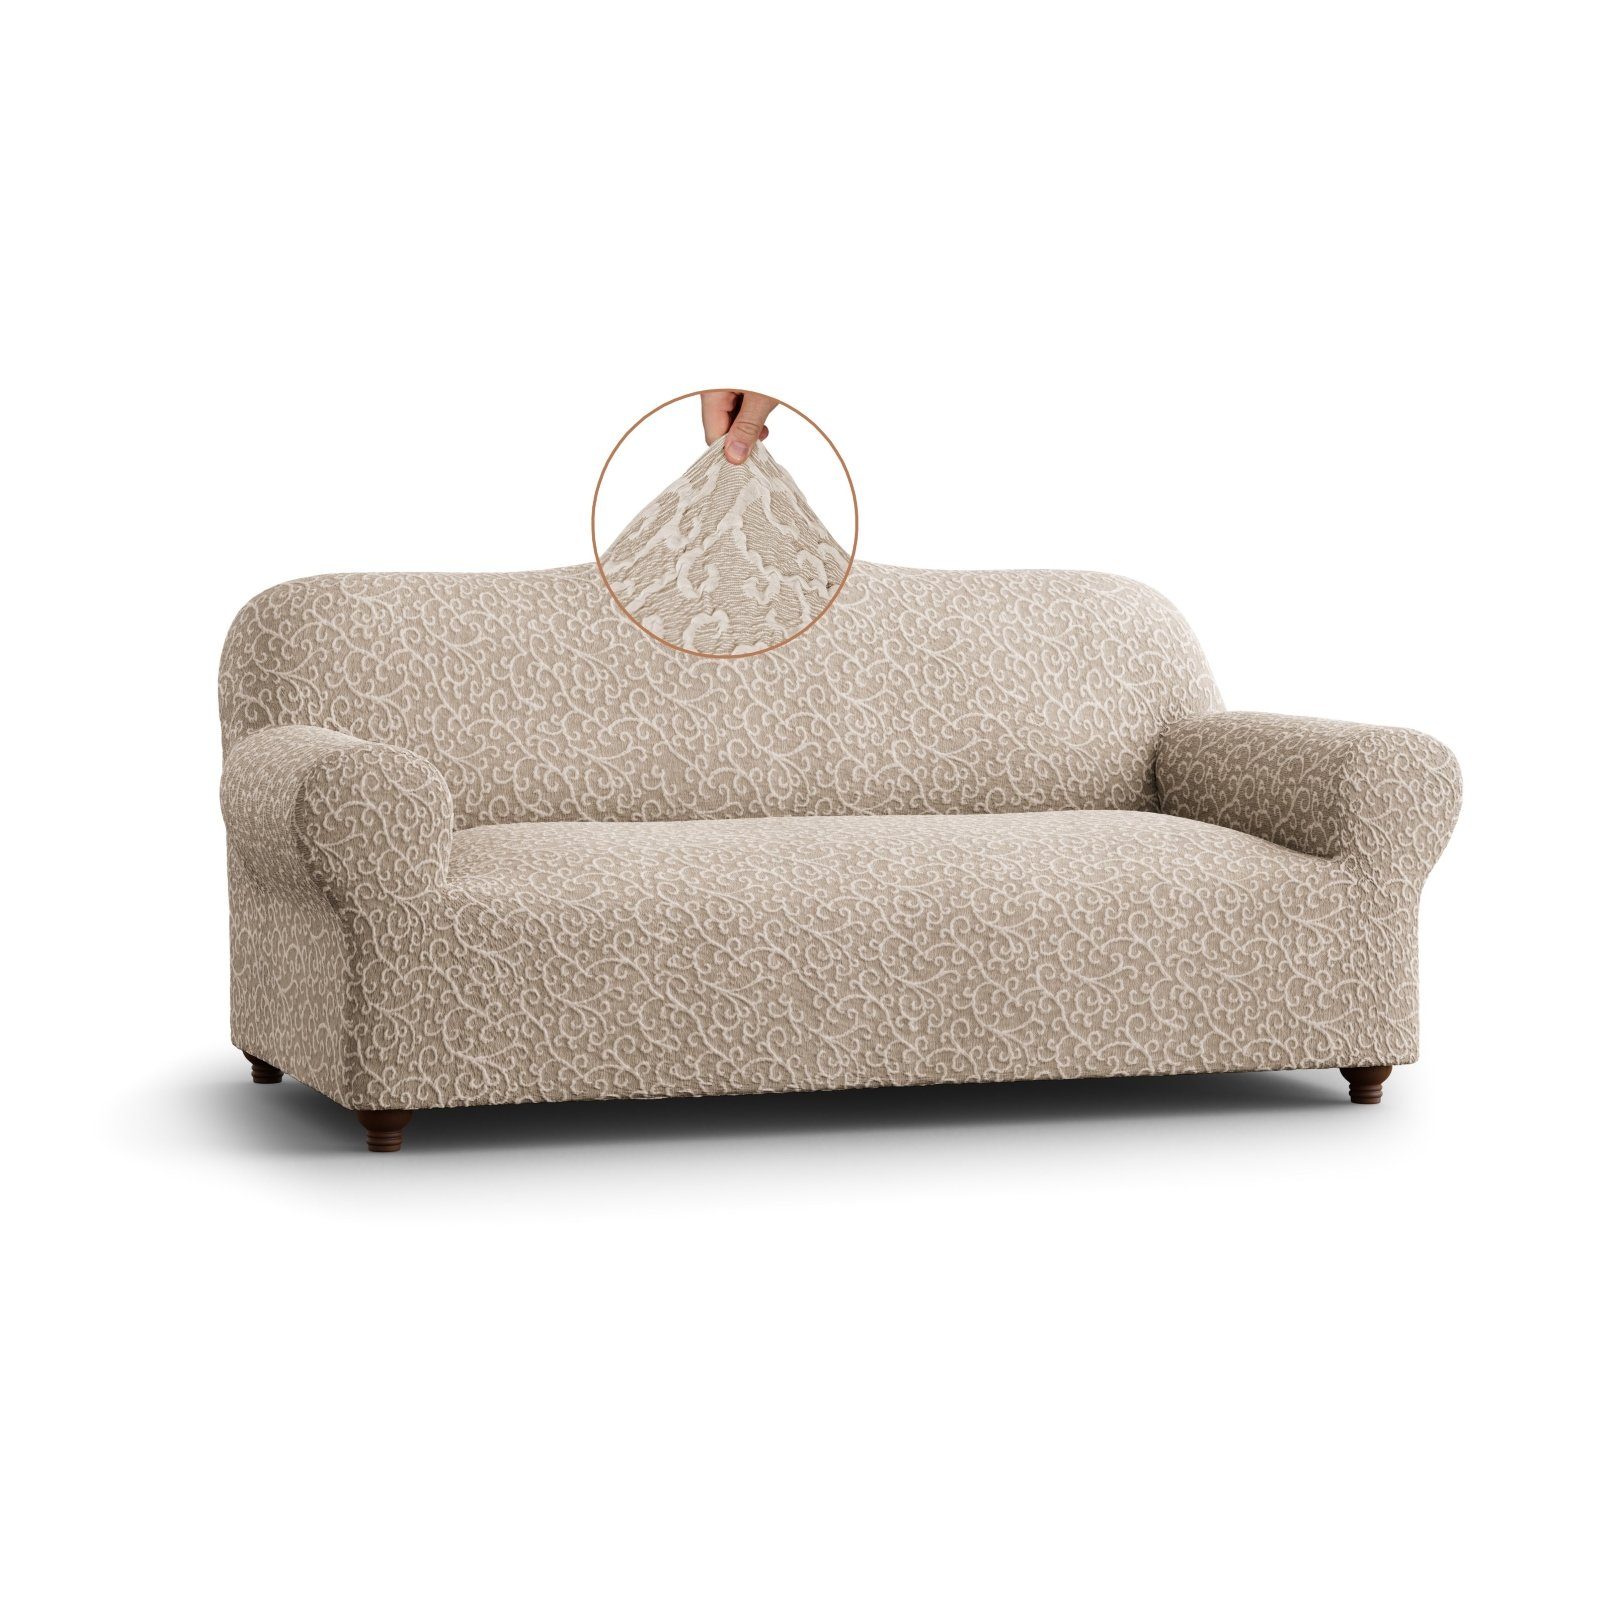 Sofahusse Elastischer Sofabezug für 3-Sitzer, italienische Handarbeit,  Paulato by GA.I.CO, widerstandsfähiger Jacquard Baumwollstoff (Reliefmuster)